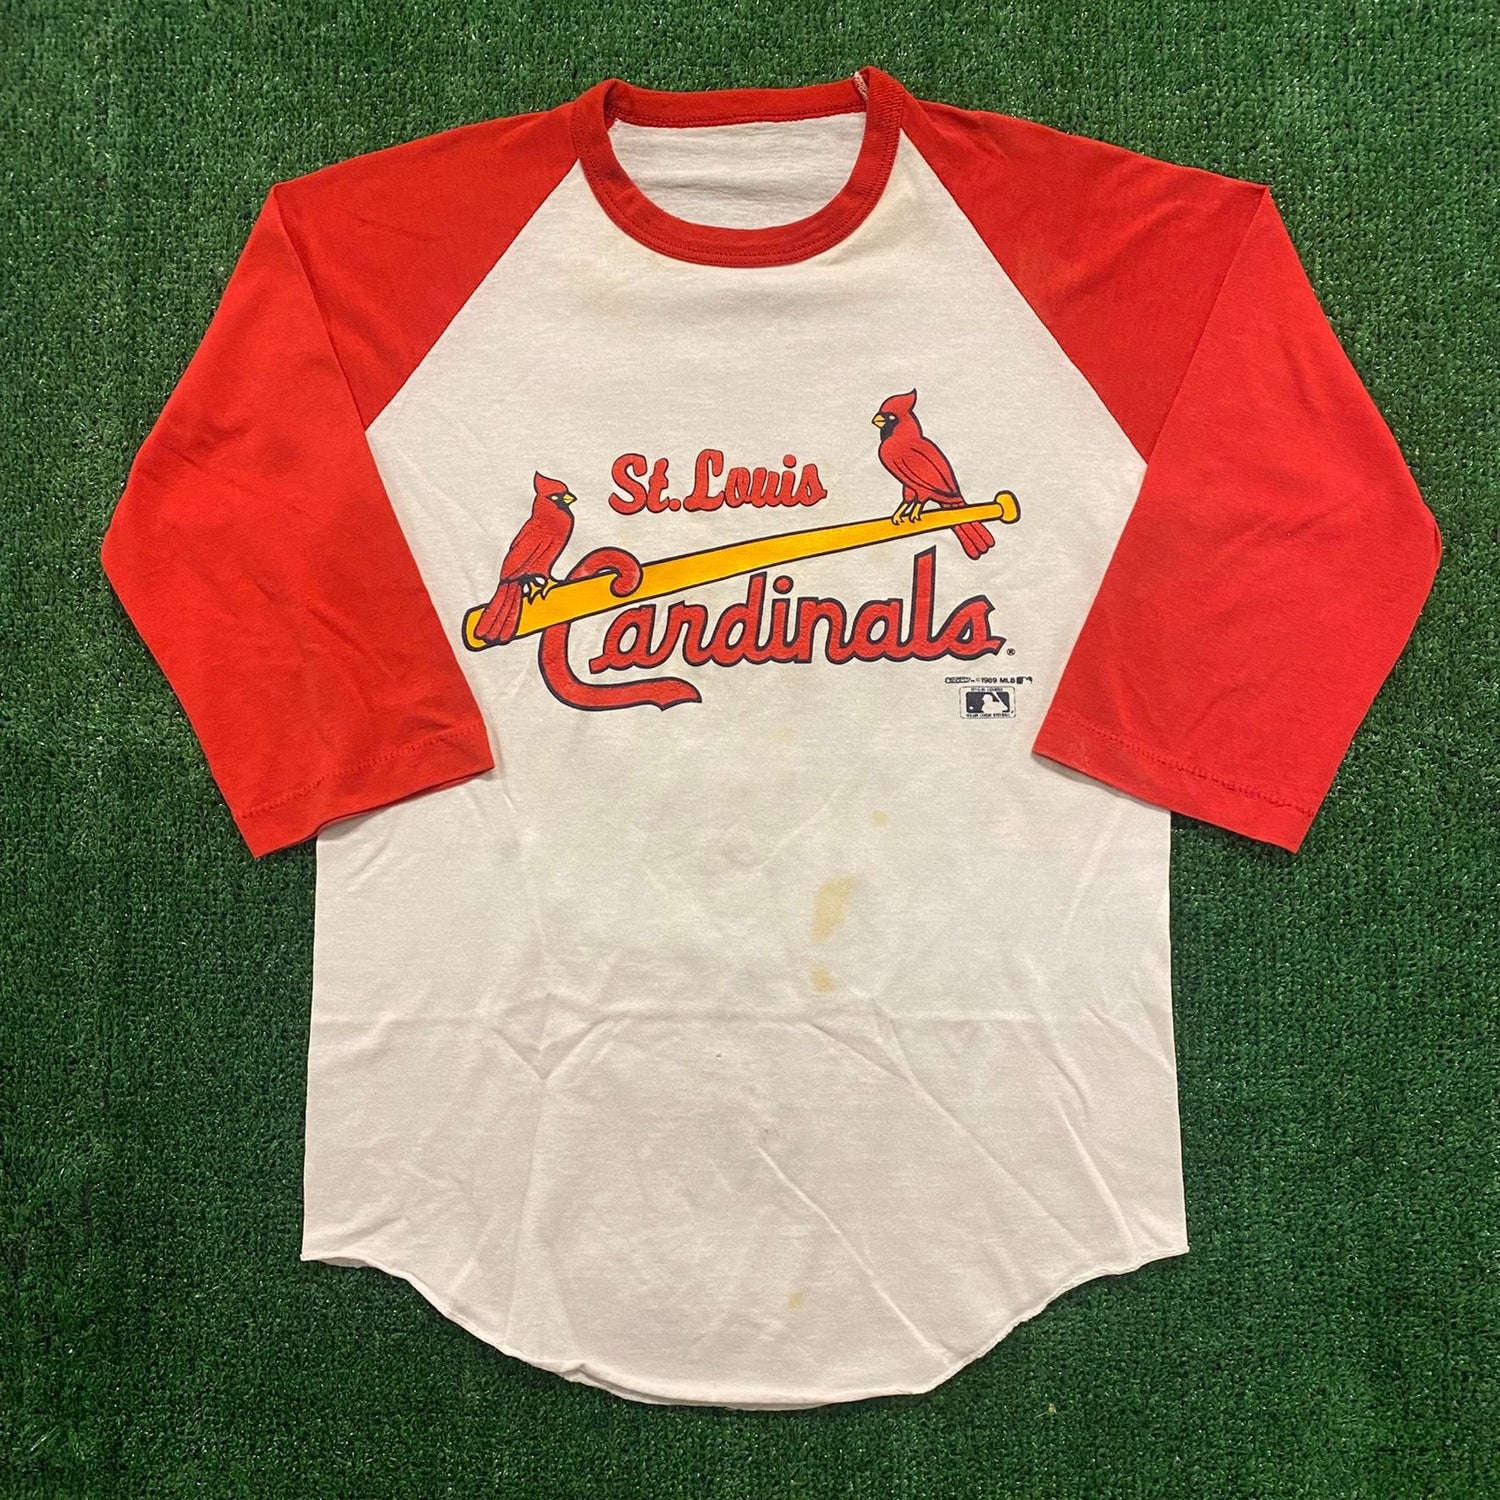 Vintage St. Louis Cardinals t shirt. This vintage